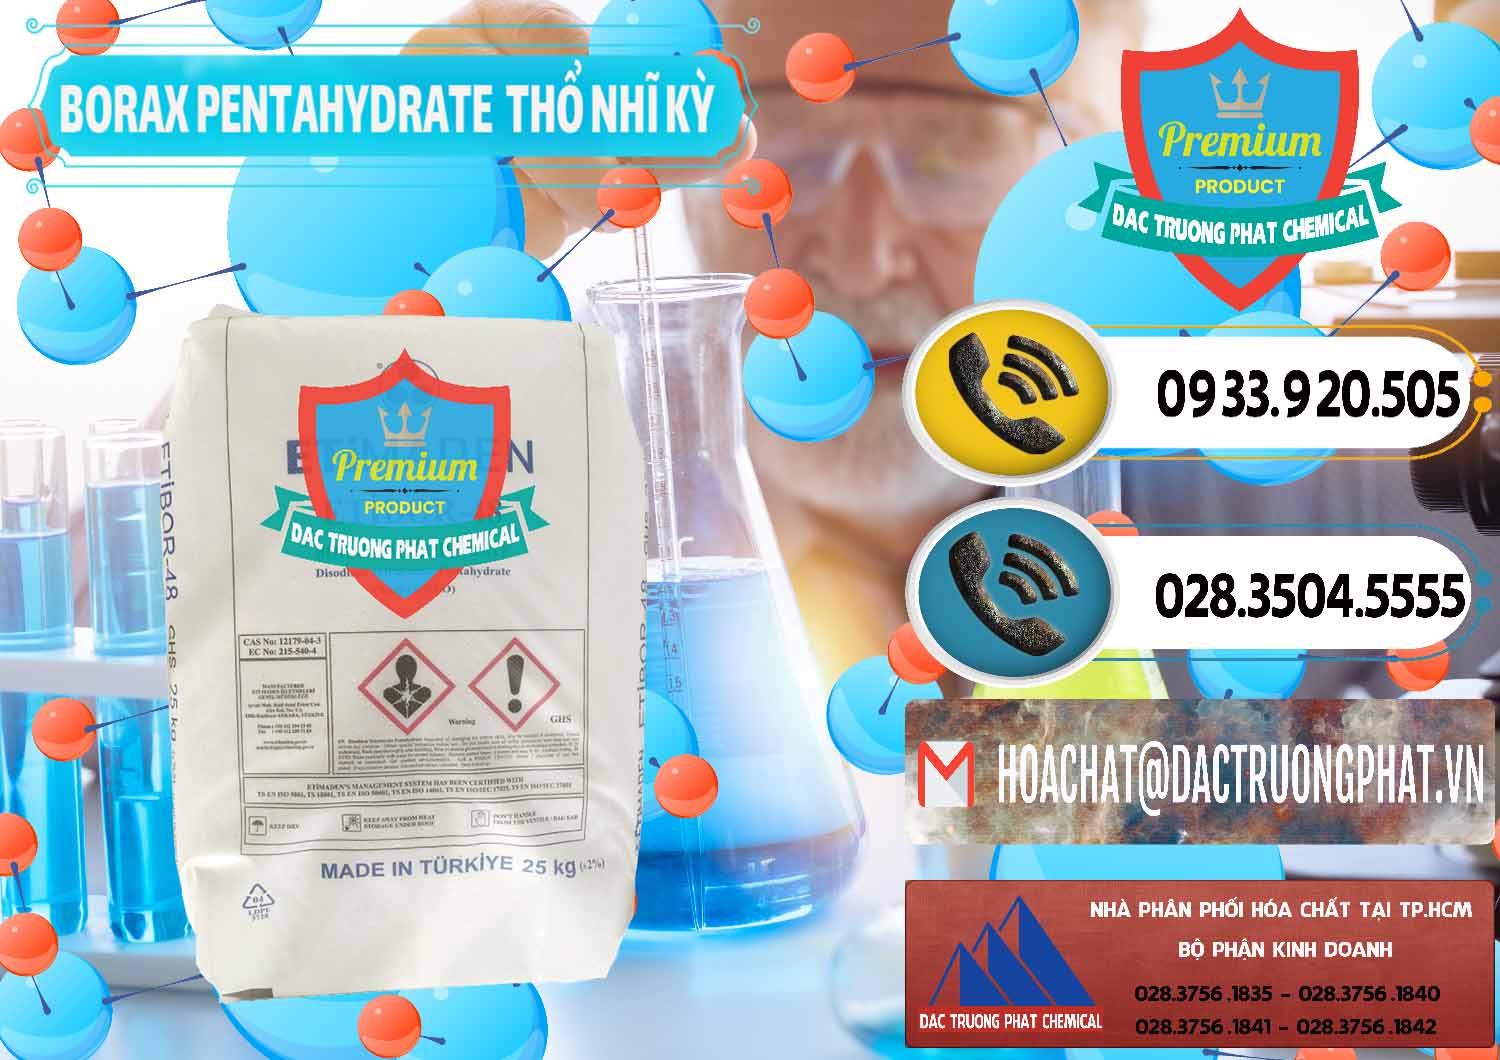 Chuyên phân phối và bán Borax Pentahydrate Thổ Nhĩ Kỳ Turkey - 0431 - Nhà cung cấp và bán hóa chất tại TP.HCM - hoachatdetnhuom.vn